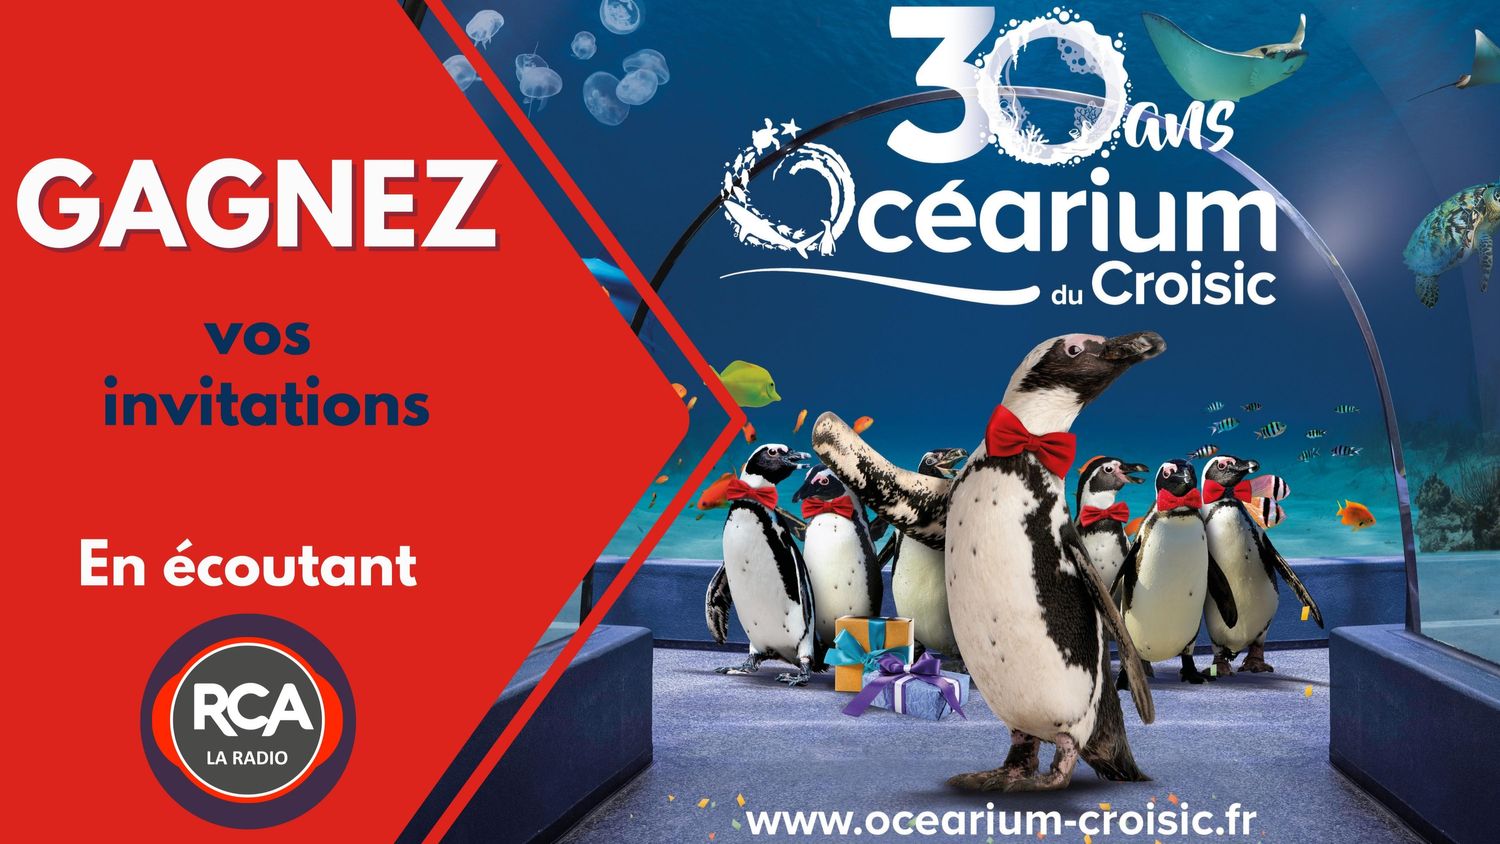 GAGNEZ VOS INVITATIONS POUR L'OCEARIUM DU CROISIC !